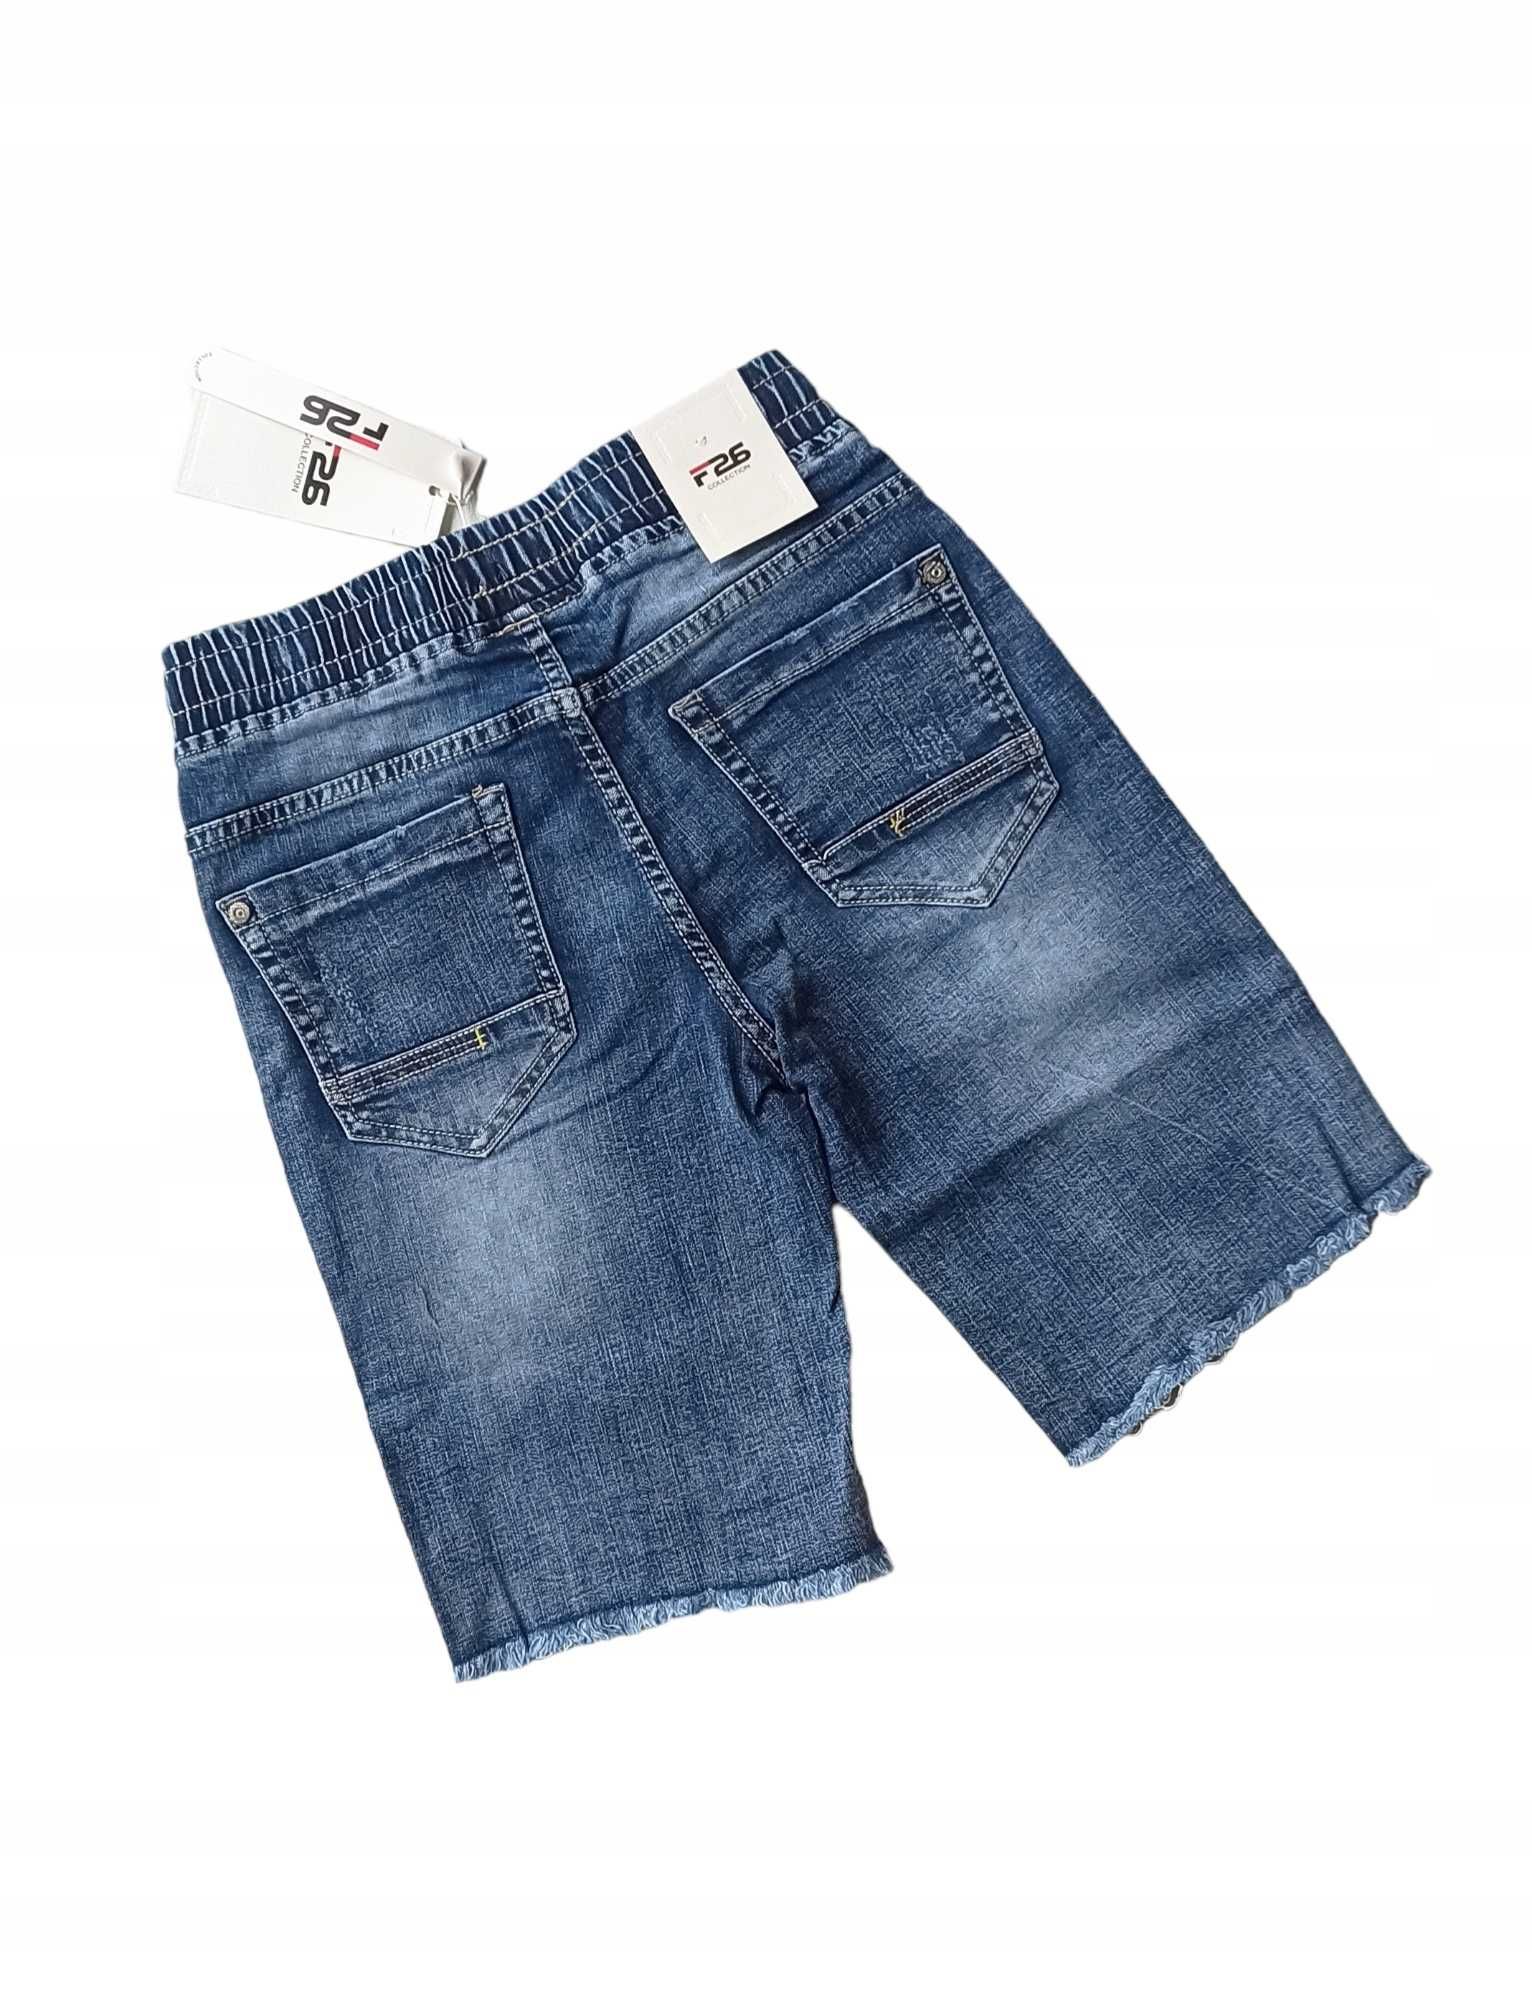 Krótkie spodenki szorty jeansowe dla chłopca nowy 134-140